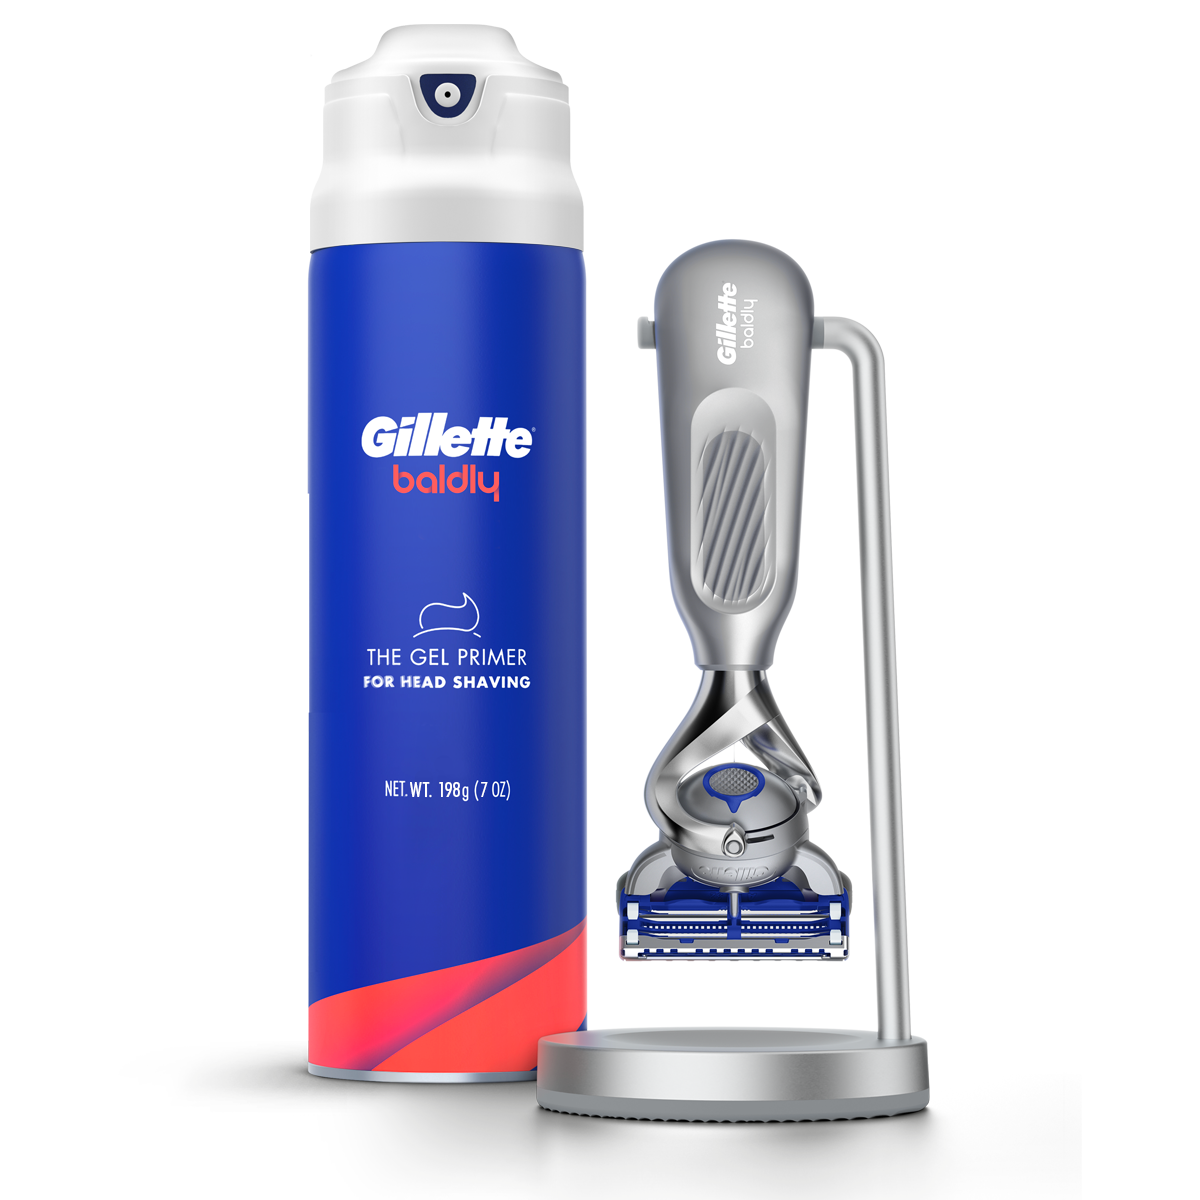 Gillette baldly Shave-It Kit